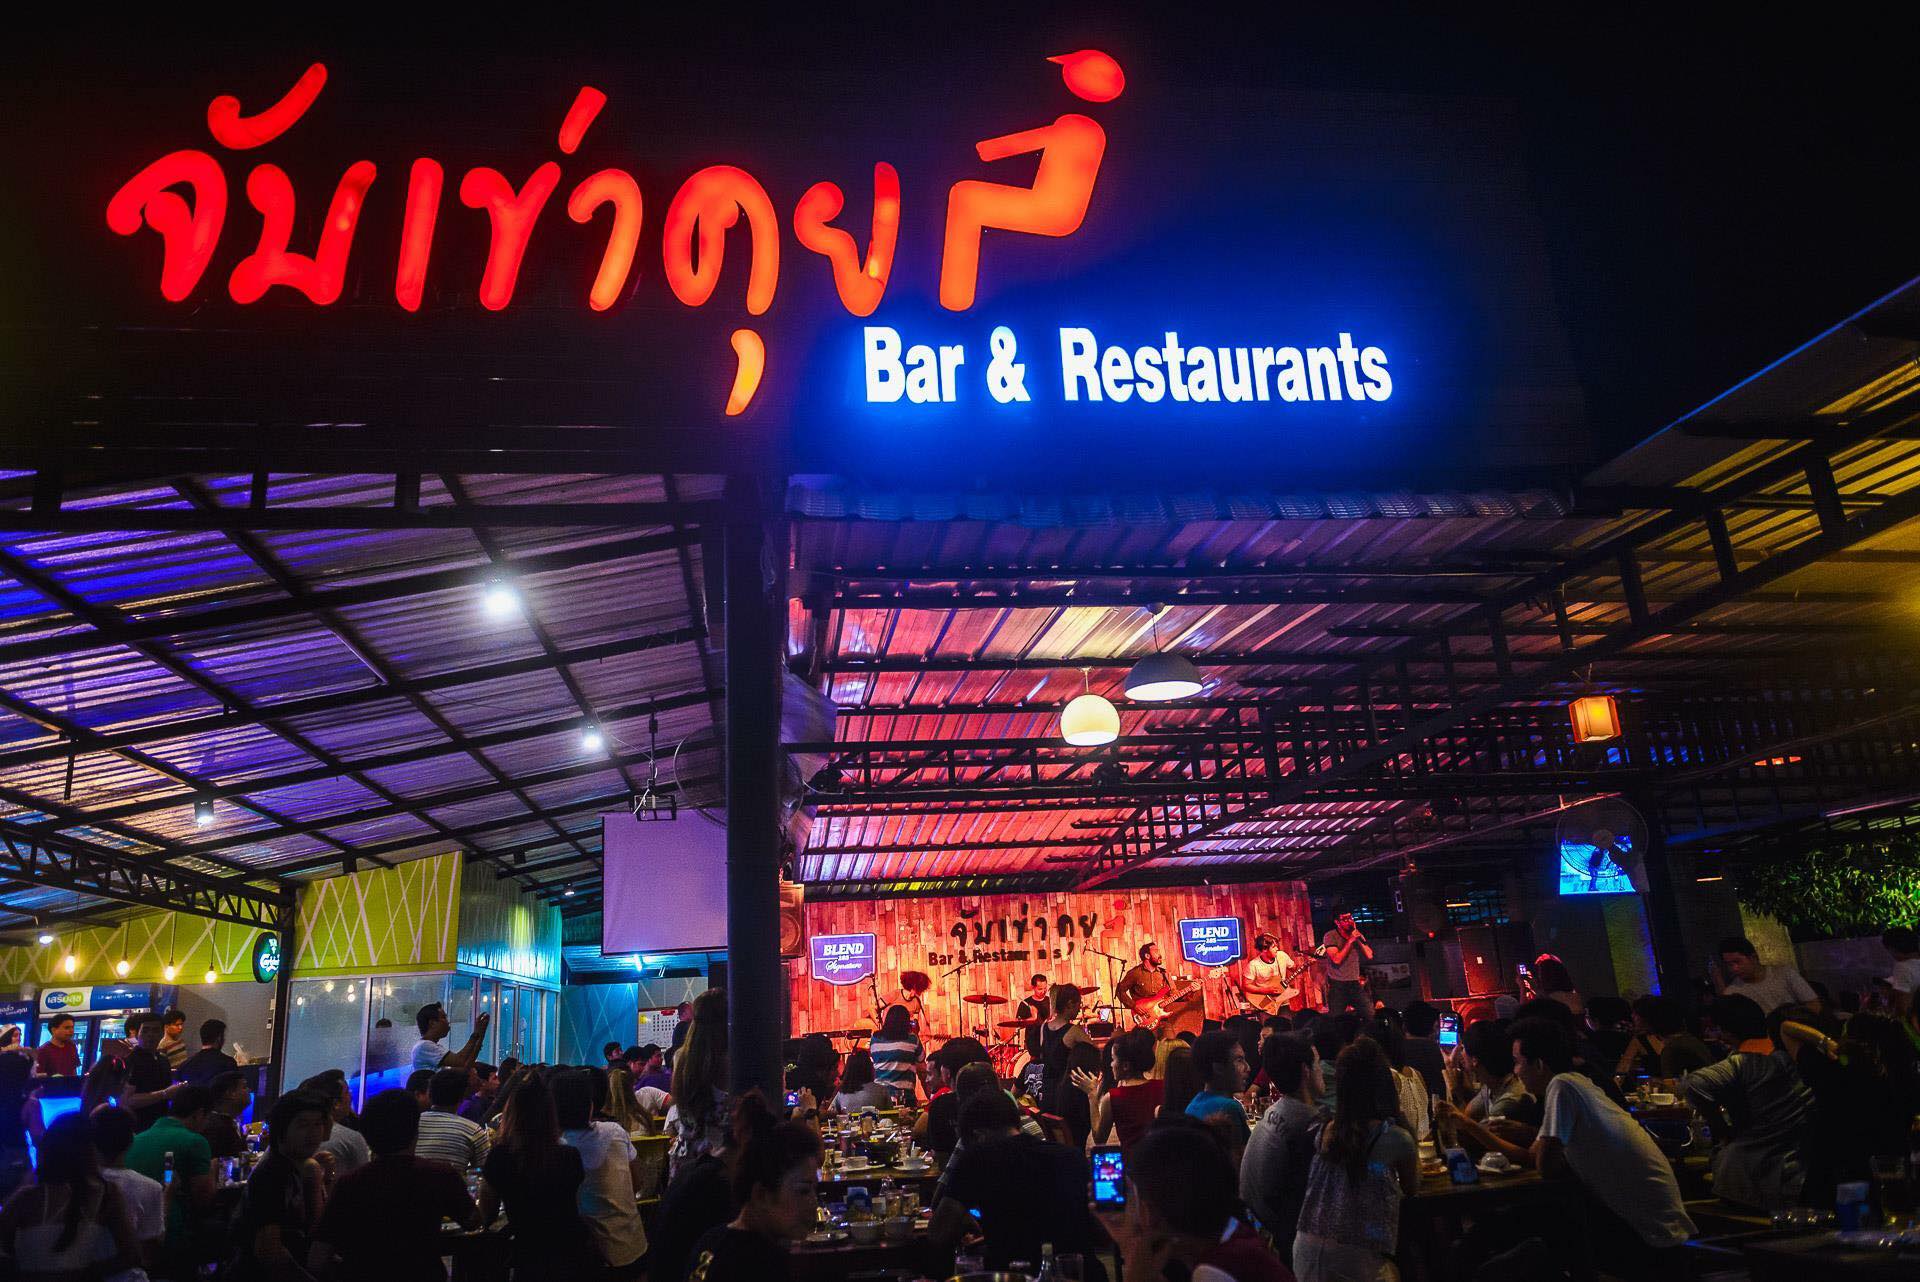 JkkBar (จับเข่าคุย Bar & Restaurant) : Nakhon Pathom (นครปฐม)